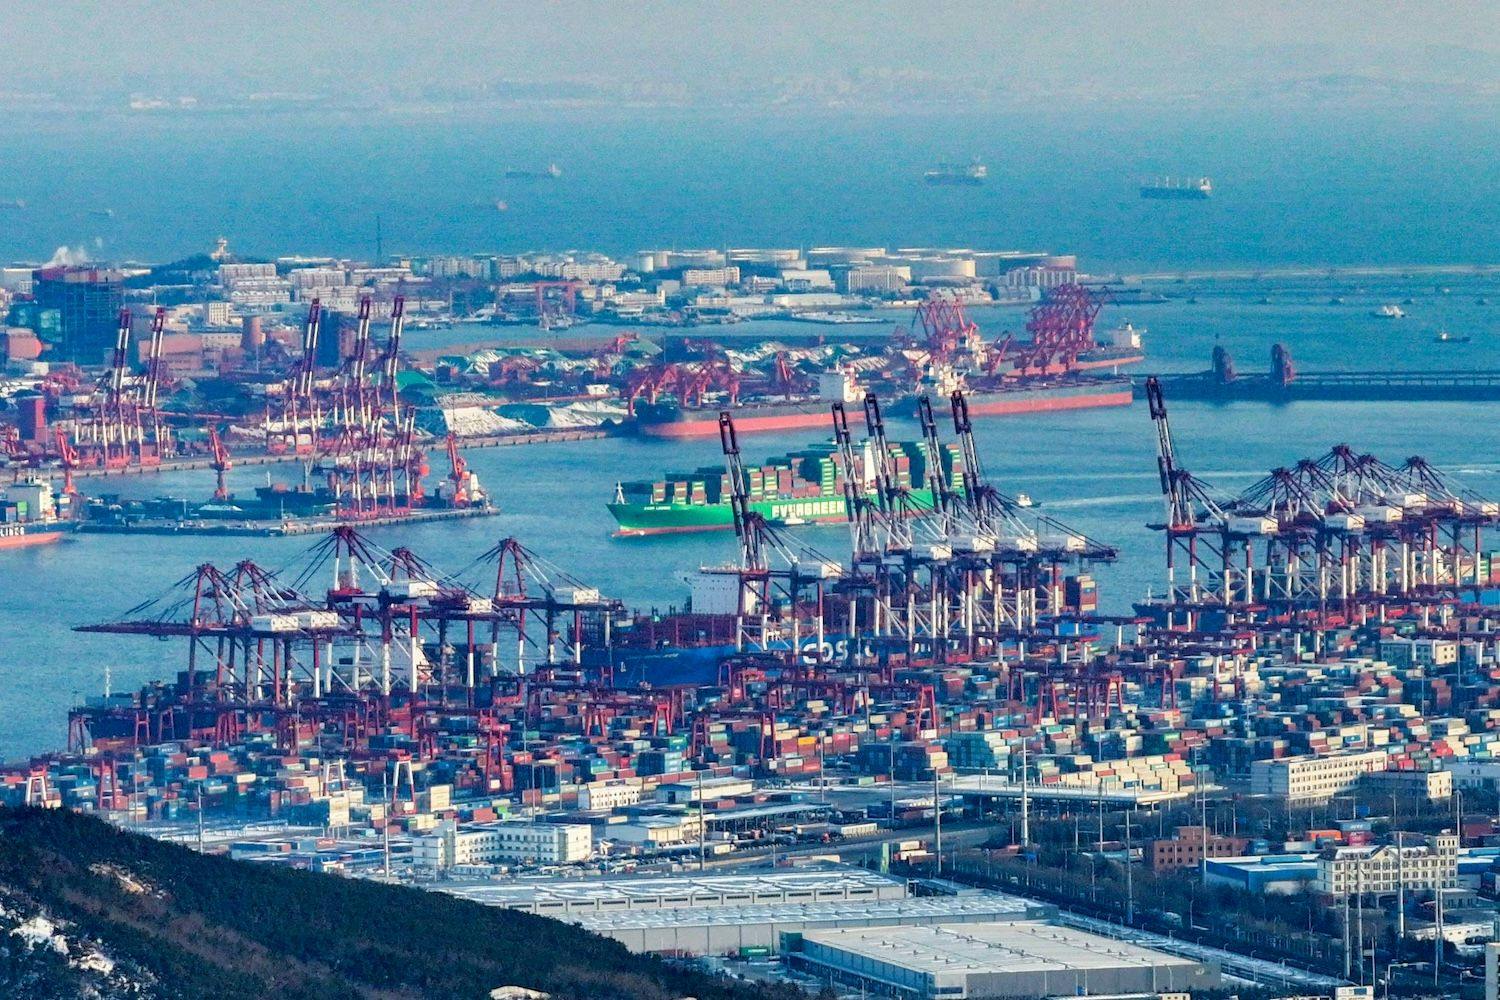 China Wirtschaft, Industrie, Lieferkette, Markt, globale Lieferkette, Weltwirtschaft: Ein Frachtschiff fährt in den Qianwan Container Terminal im Hafen von Qingdao, China, ein.